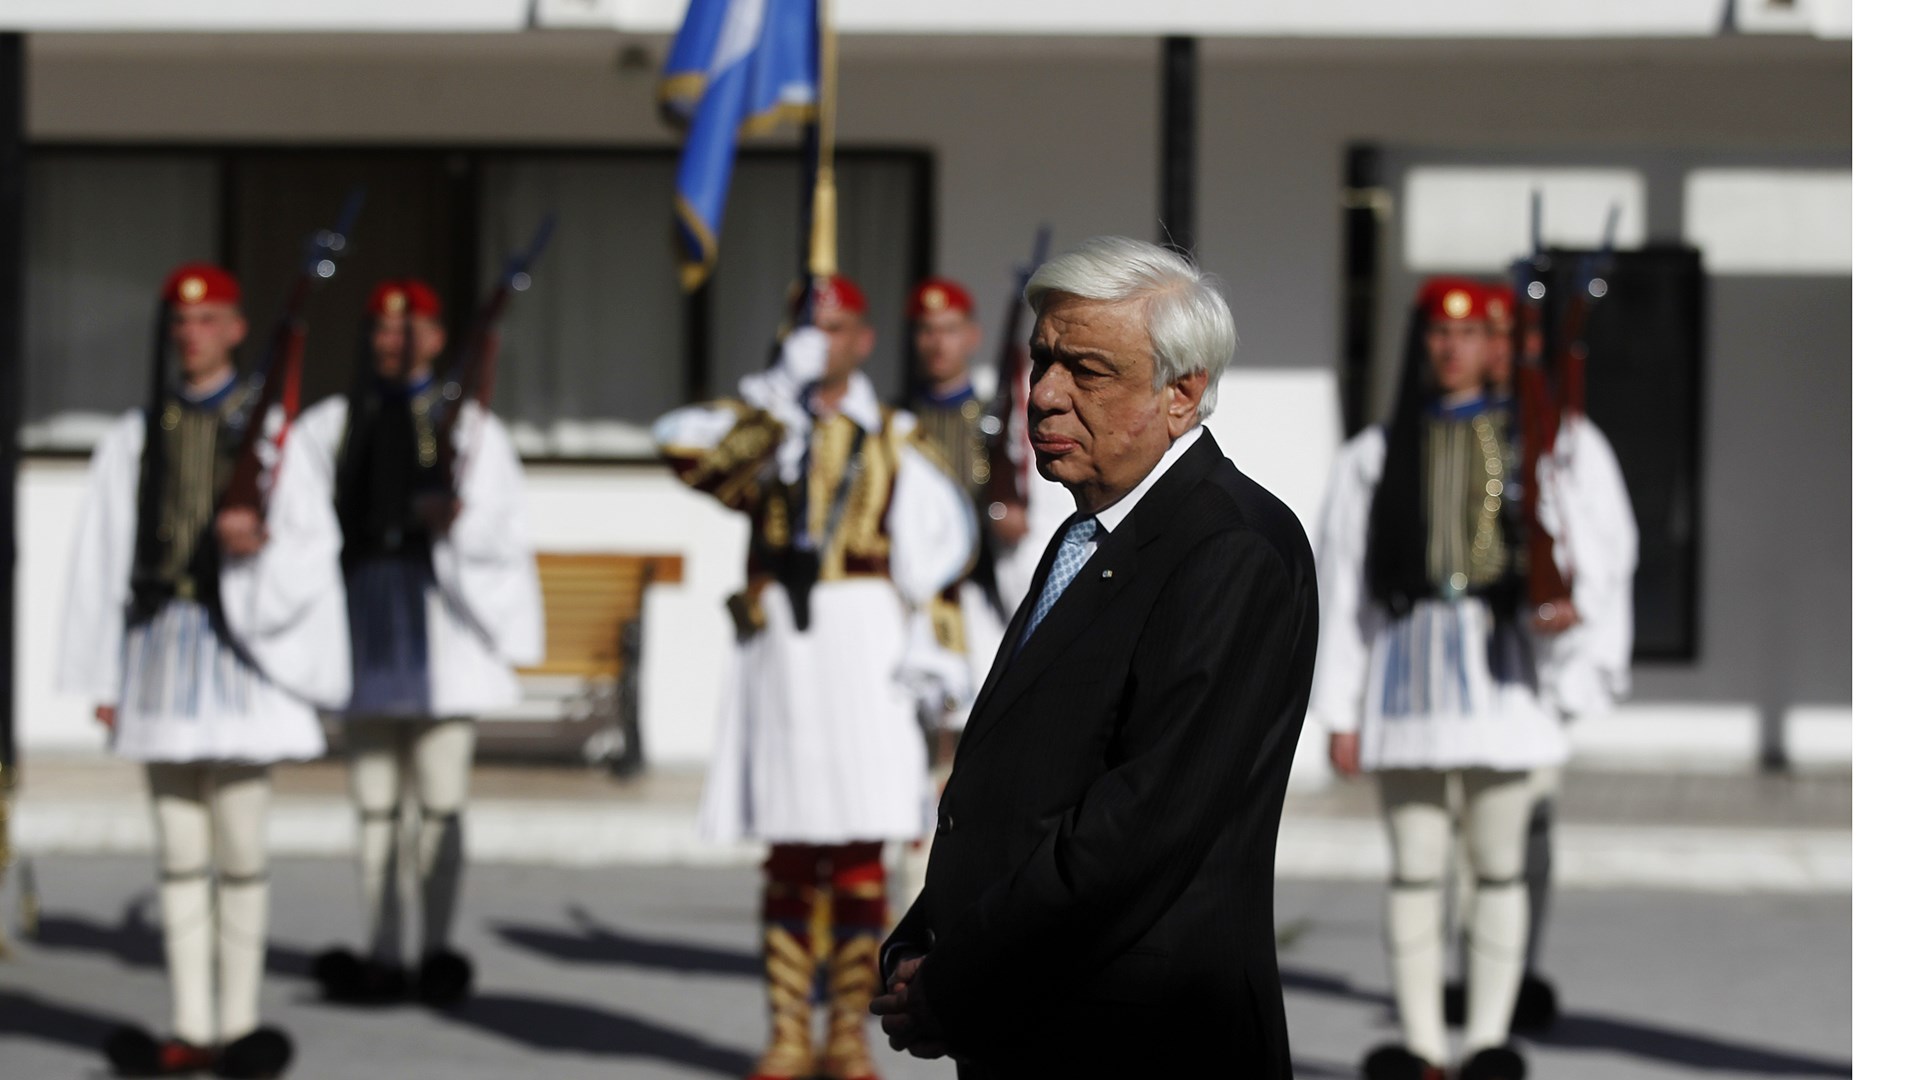 Ο Προκόπης Παυλόπουλος στην τελετή ανακήρυξης του Αγίου Γεωργίου «του Φουστανελά» σε προστάτη της Προεδρικής Φρουράς – ΦΩΤΟ